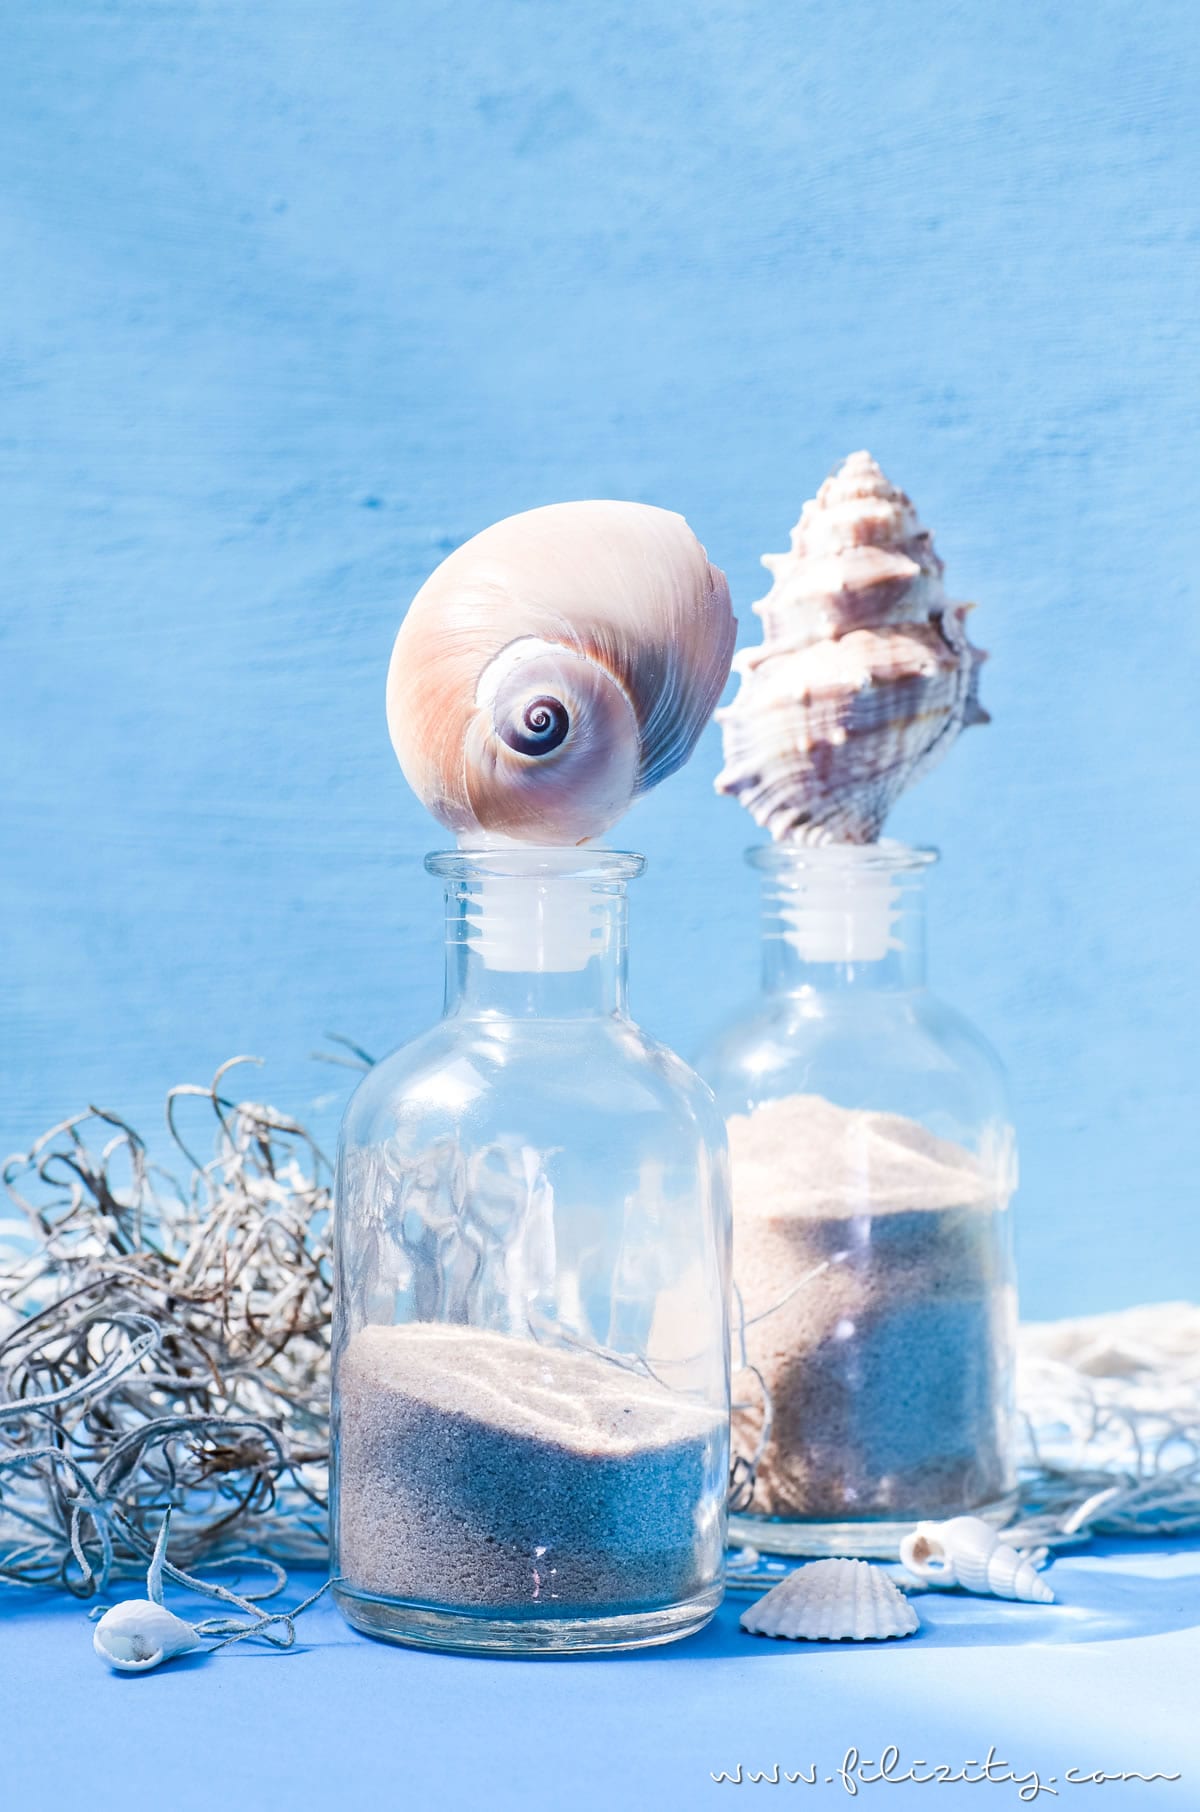 DIY Sommerdeko: Glas-Flaschen mit Muscheln aufpeppen | Urlaubs-Mitbringsel hübsch dekorieren | Filizity.com | DIY-Blog aus dem Rheinland #sommer #strand #urlaub